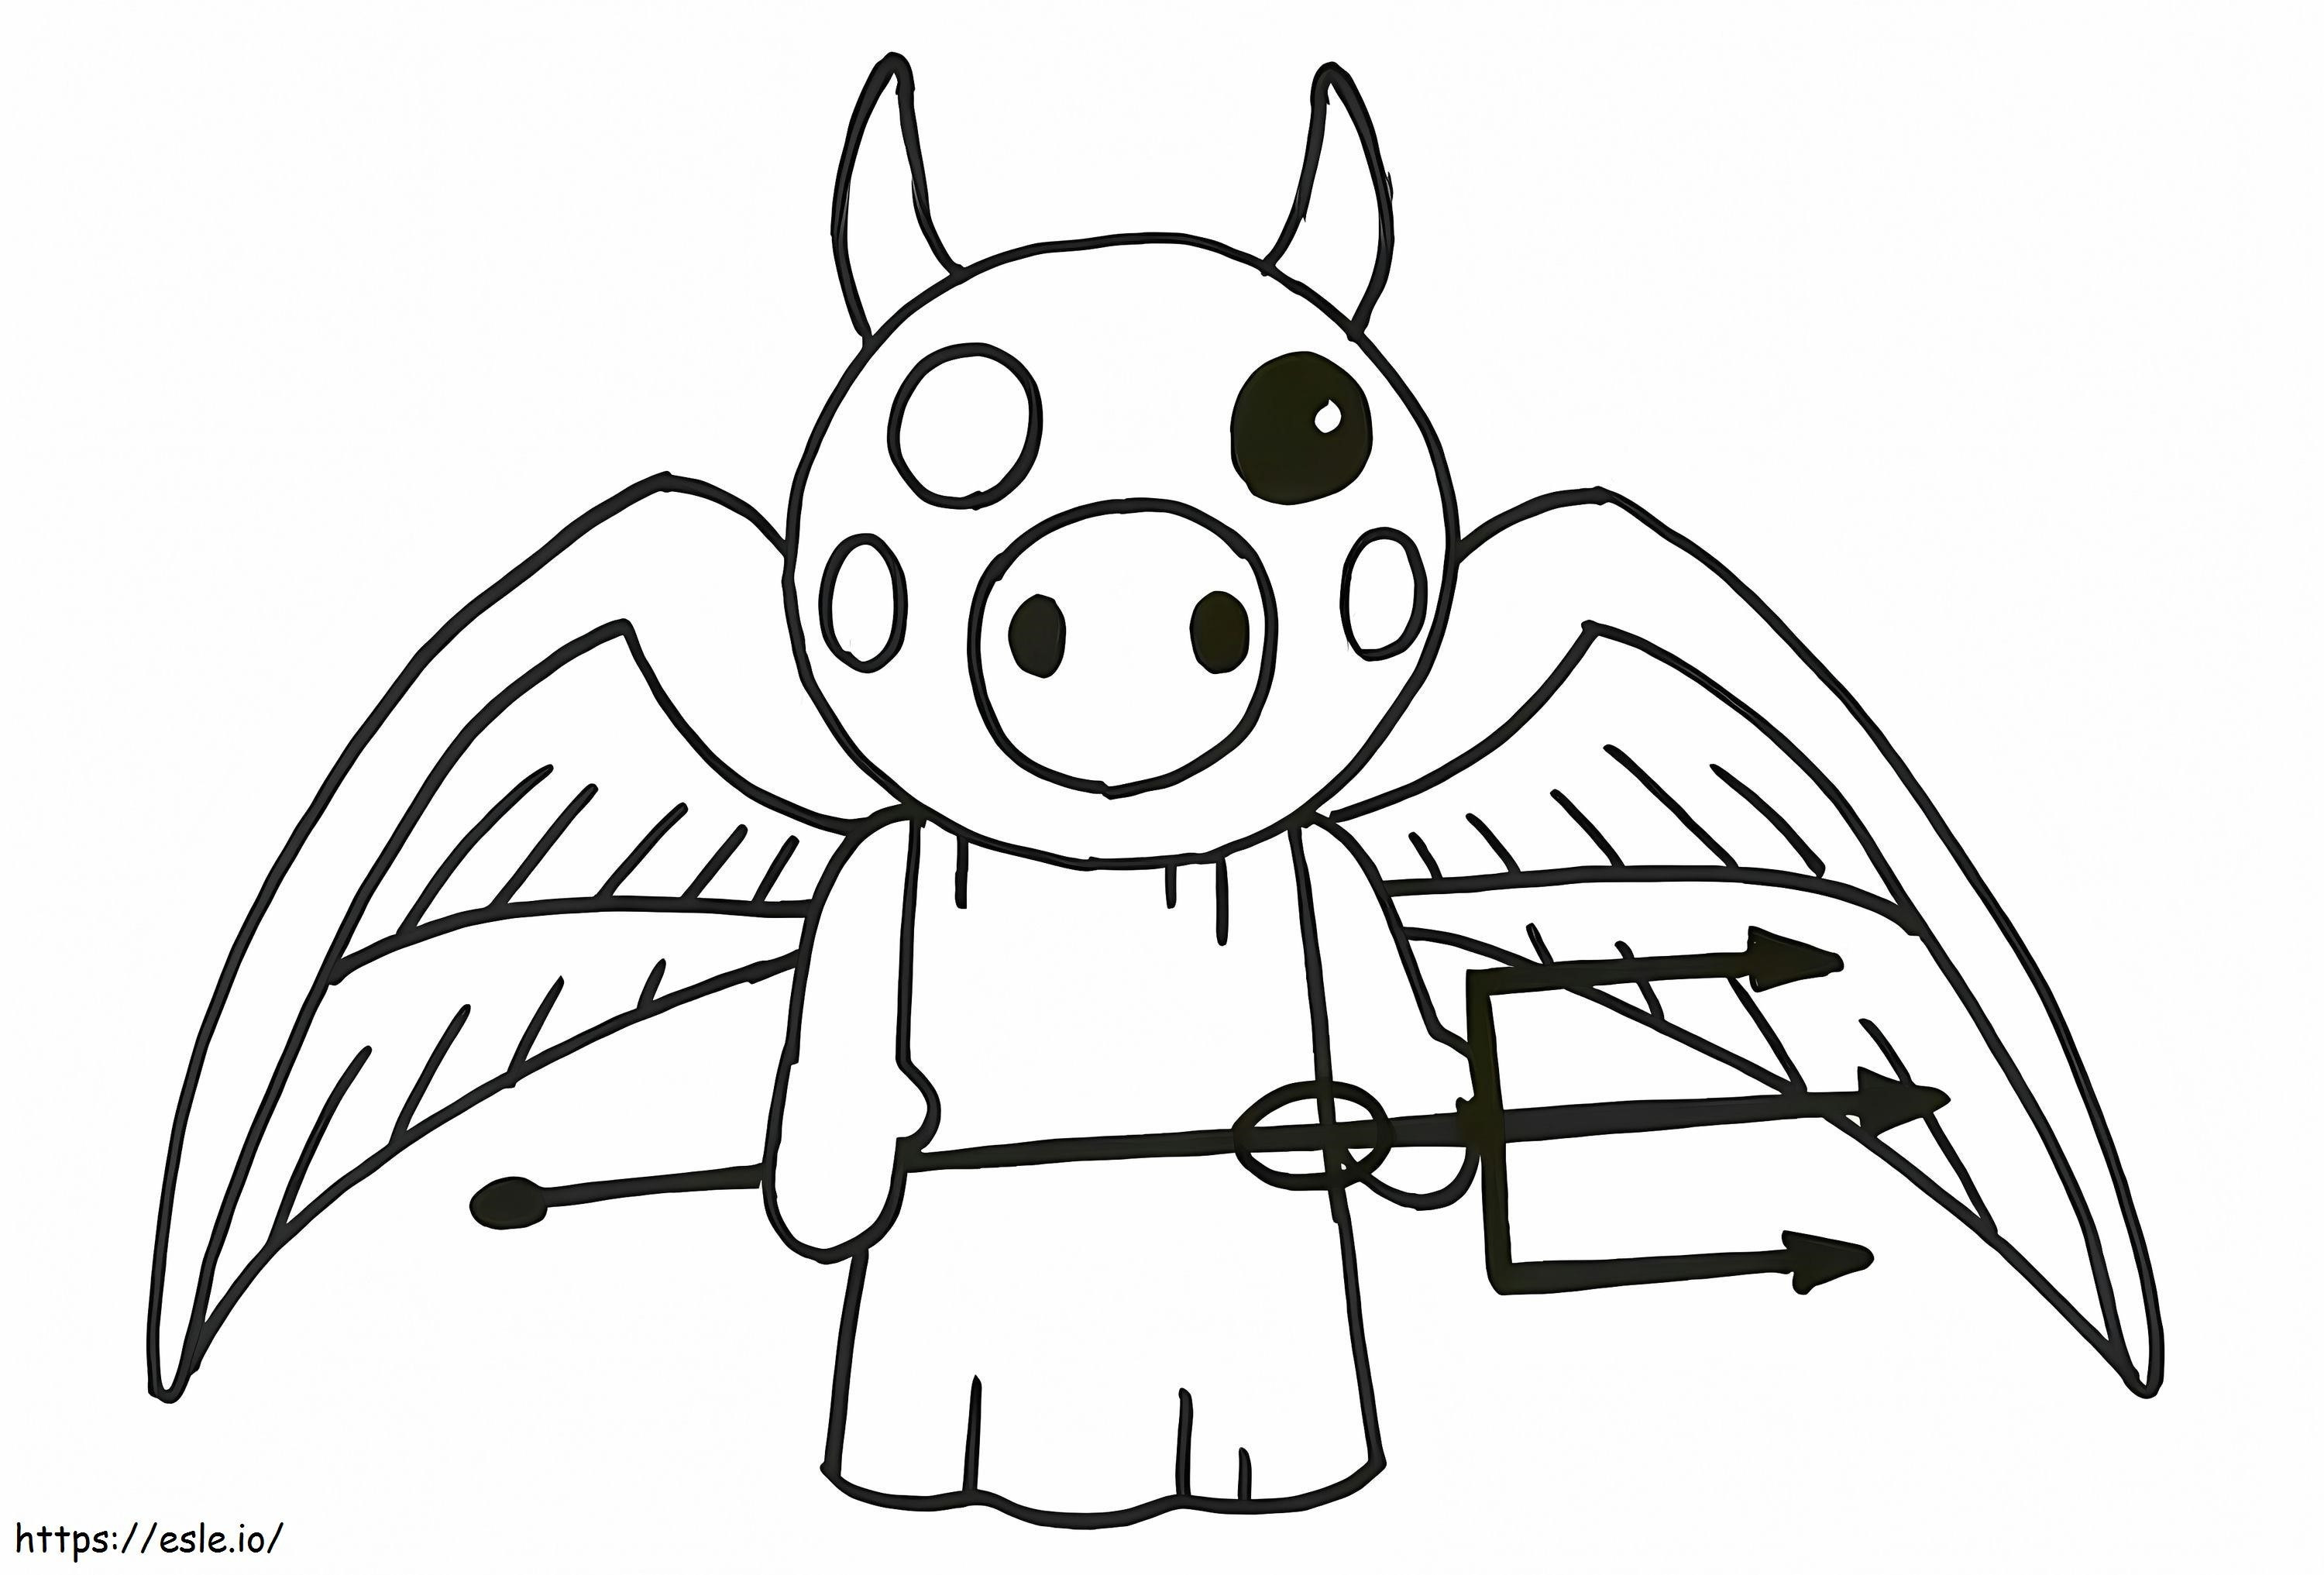 Devil Pig coloring page